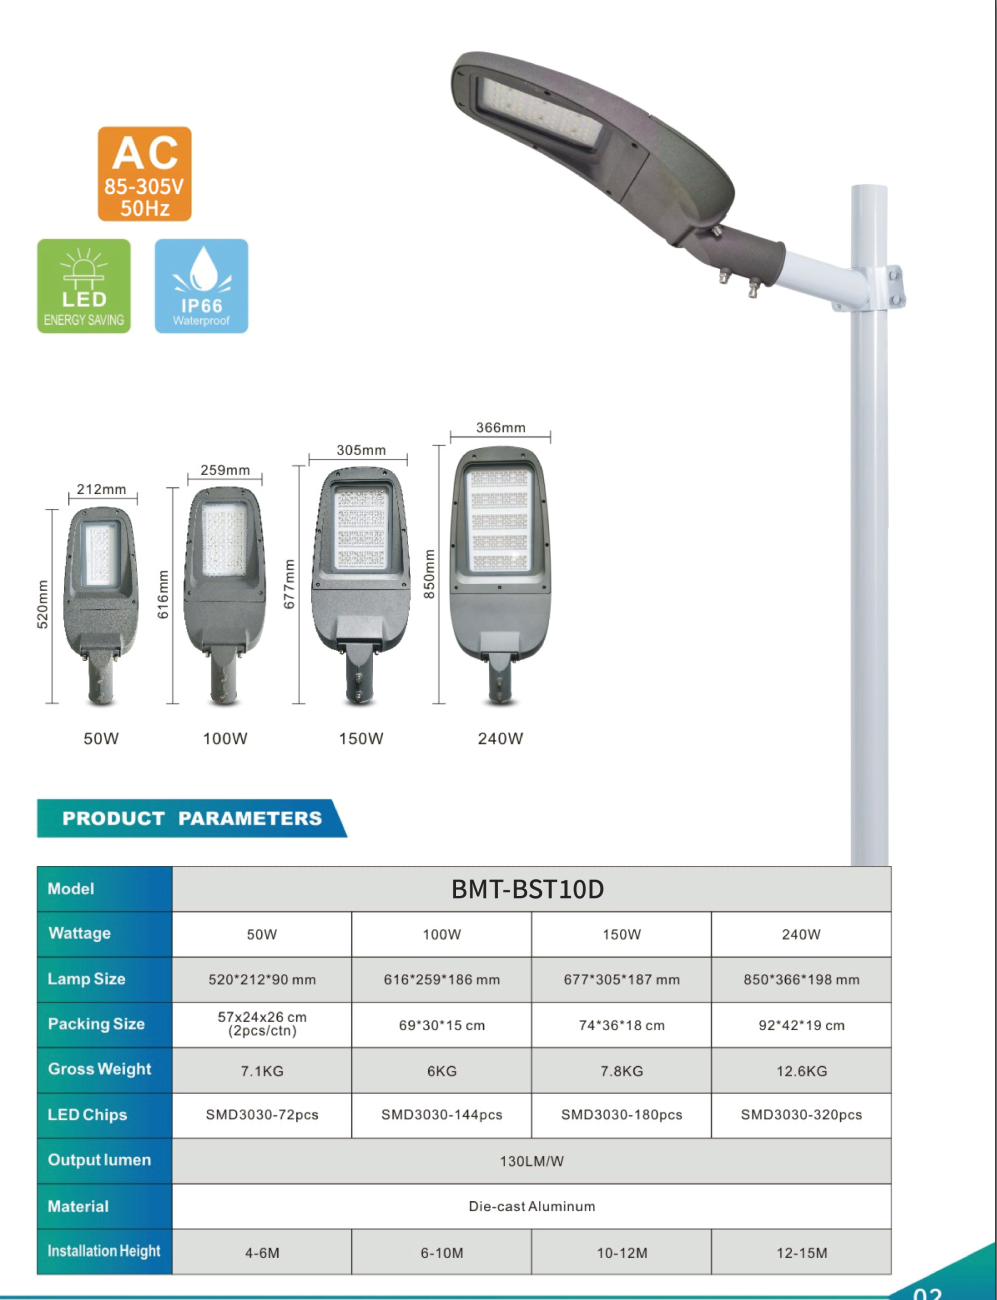 PHILIPS OEM LED Street Light BMT-BST10D Heat Sink Outdoor Ip65 Waterproof 50w 120w 180w 240w Led Road Lamp